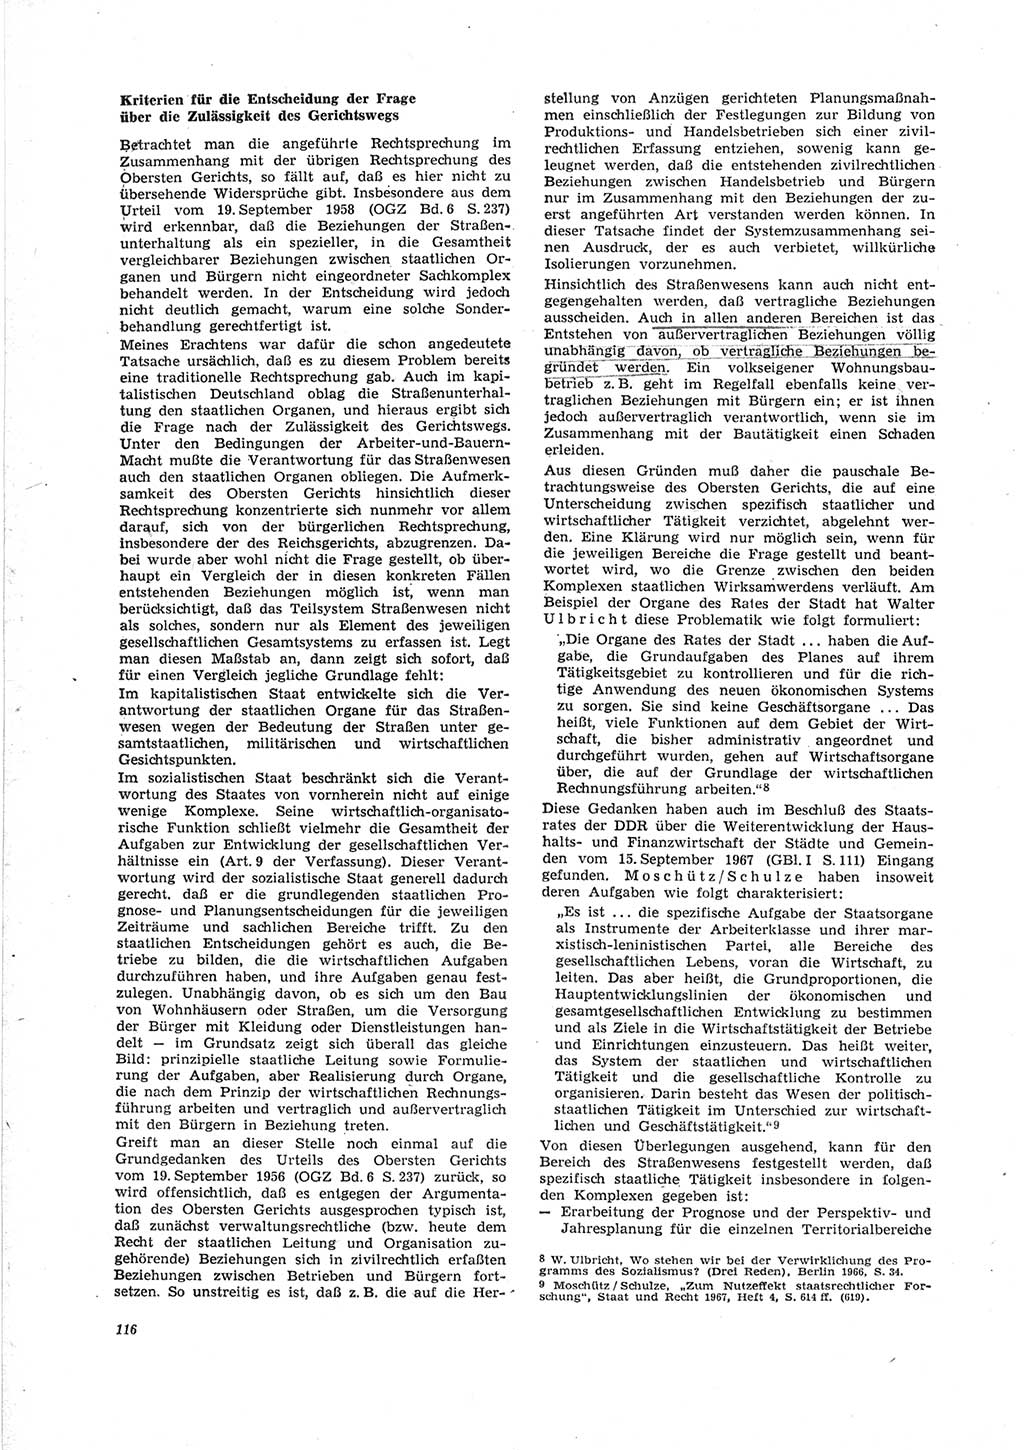 Neue Justiz (NJ), Zeitschrift für Recht und Rechtswissenschaft [Deutsche Demokratische Republik (DDR)], 23. Jahrgang 1969, Seite 116 (NJ DDR 1969, S. 116)